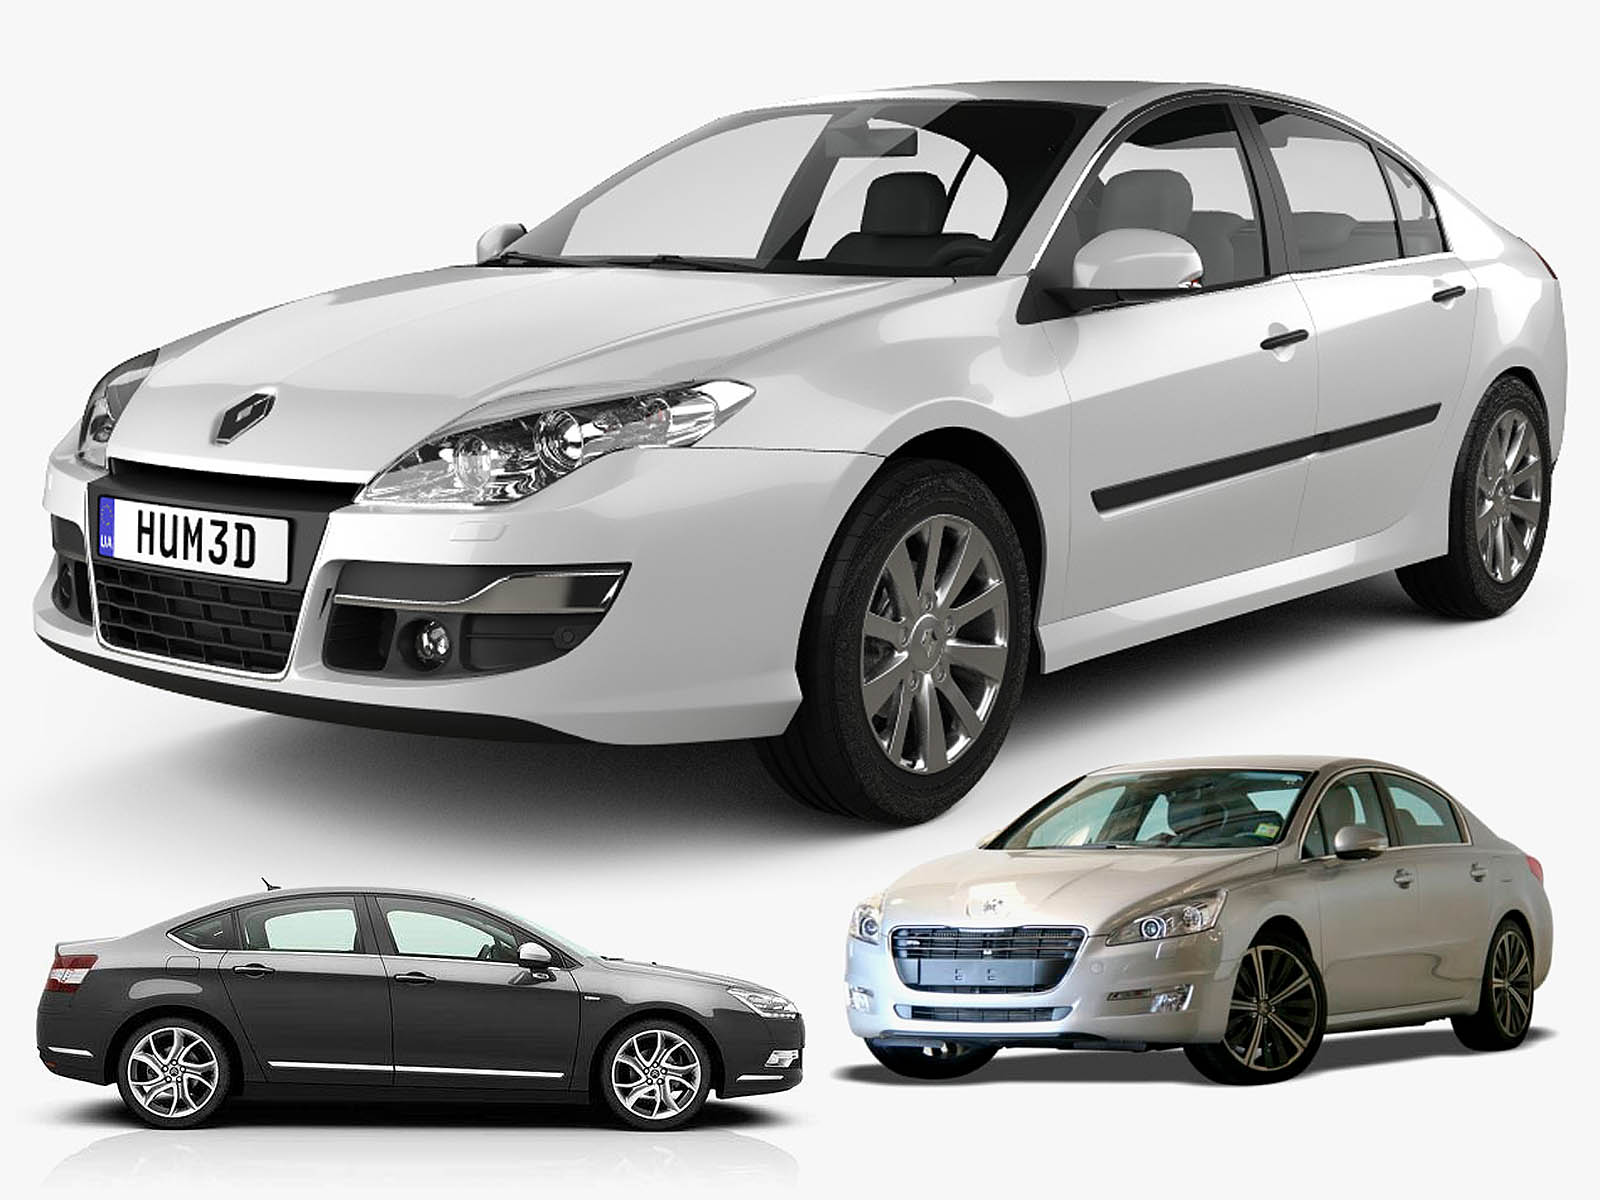 Najlepszy Używany Samochód Klasy Średniej: Citroen C5, Peugeot 508 Czy Renault Laguna 2011. Co Wybrać? – Francuskie.pl – Dziennik Motoryzacyjny